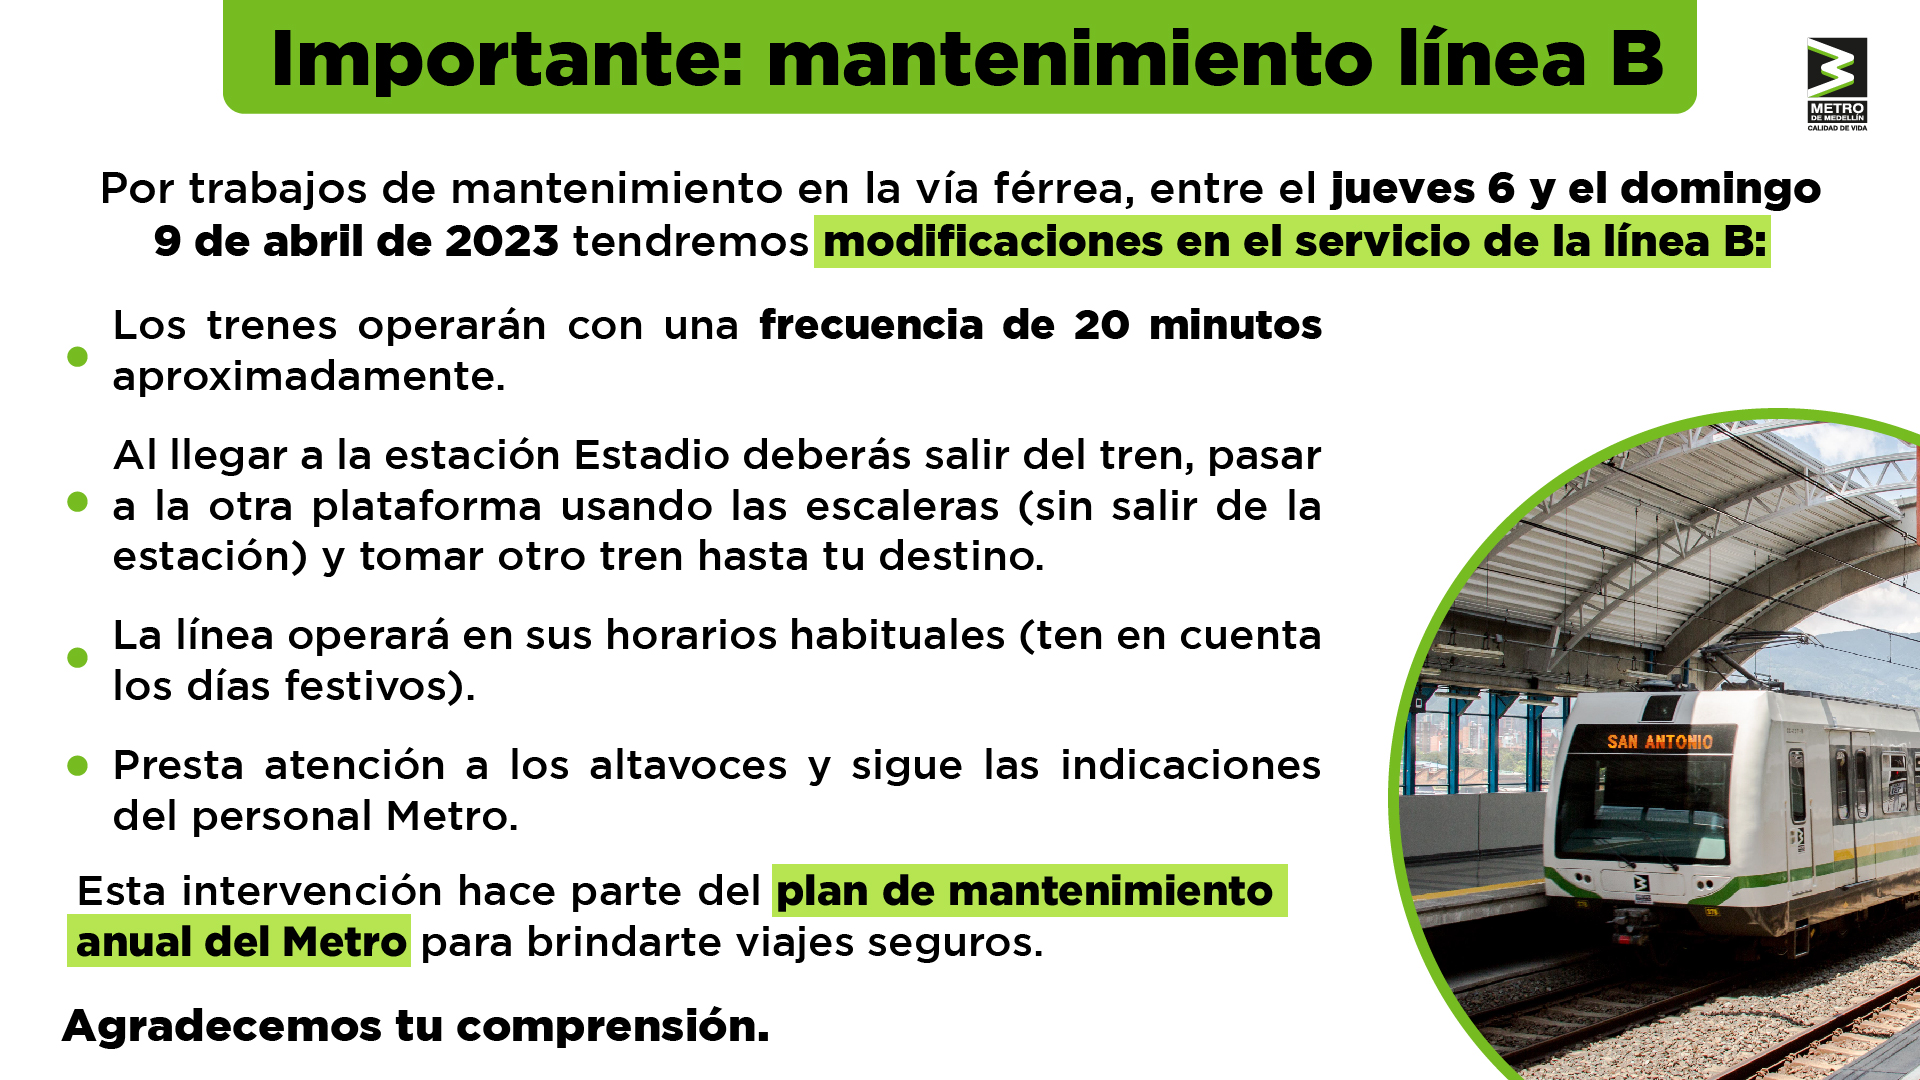 El metro de Medellín tendrá cambios importantes en su operación durante  Semana Santa: les decimos cuáles - Infobae